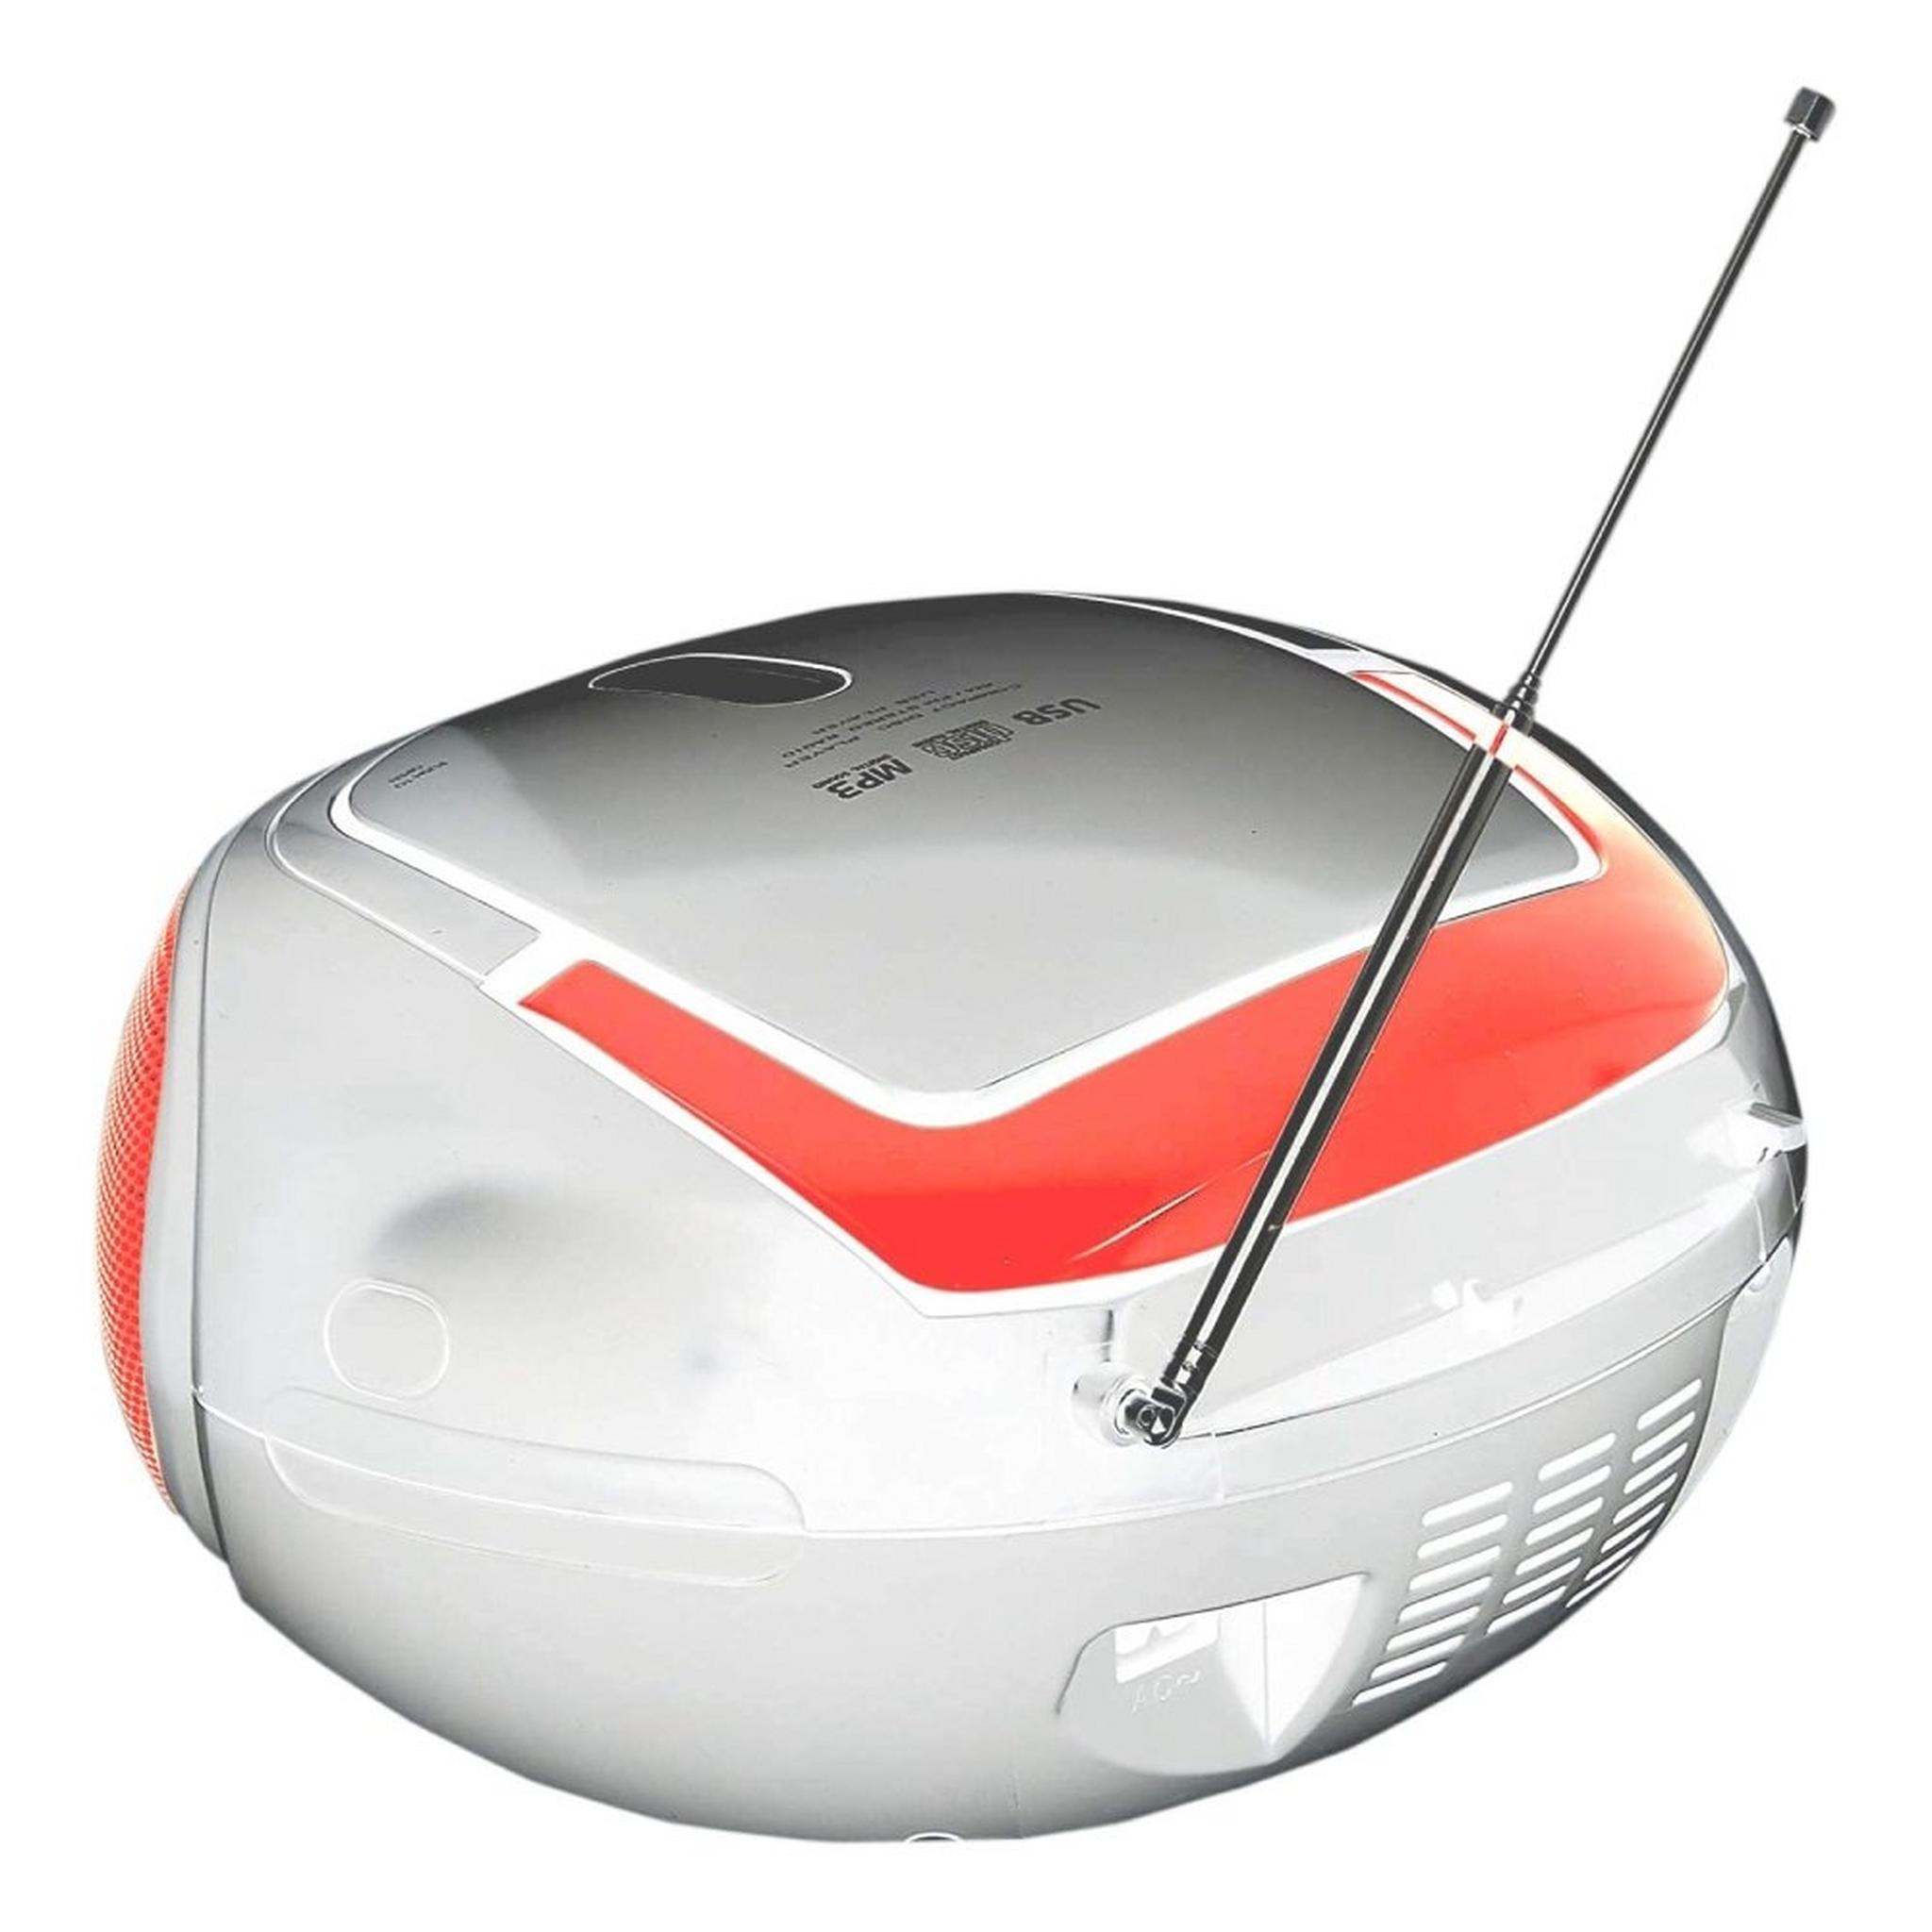 Toshiba 3W CD Player/Radio - Orange (TY-CRU20)